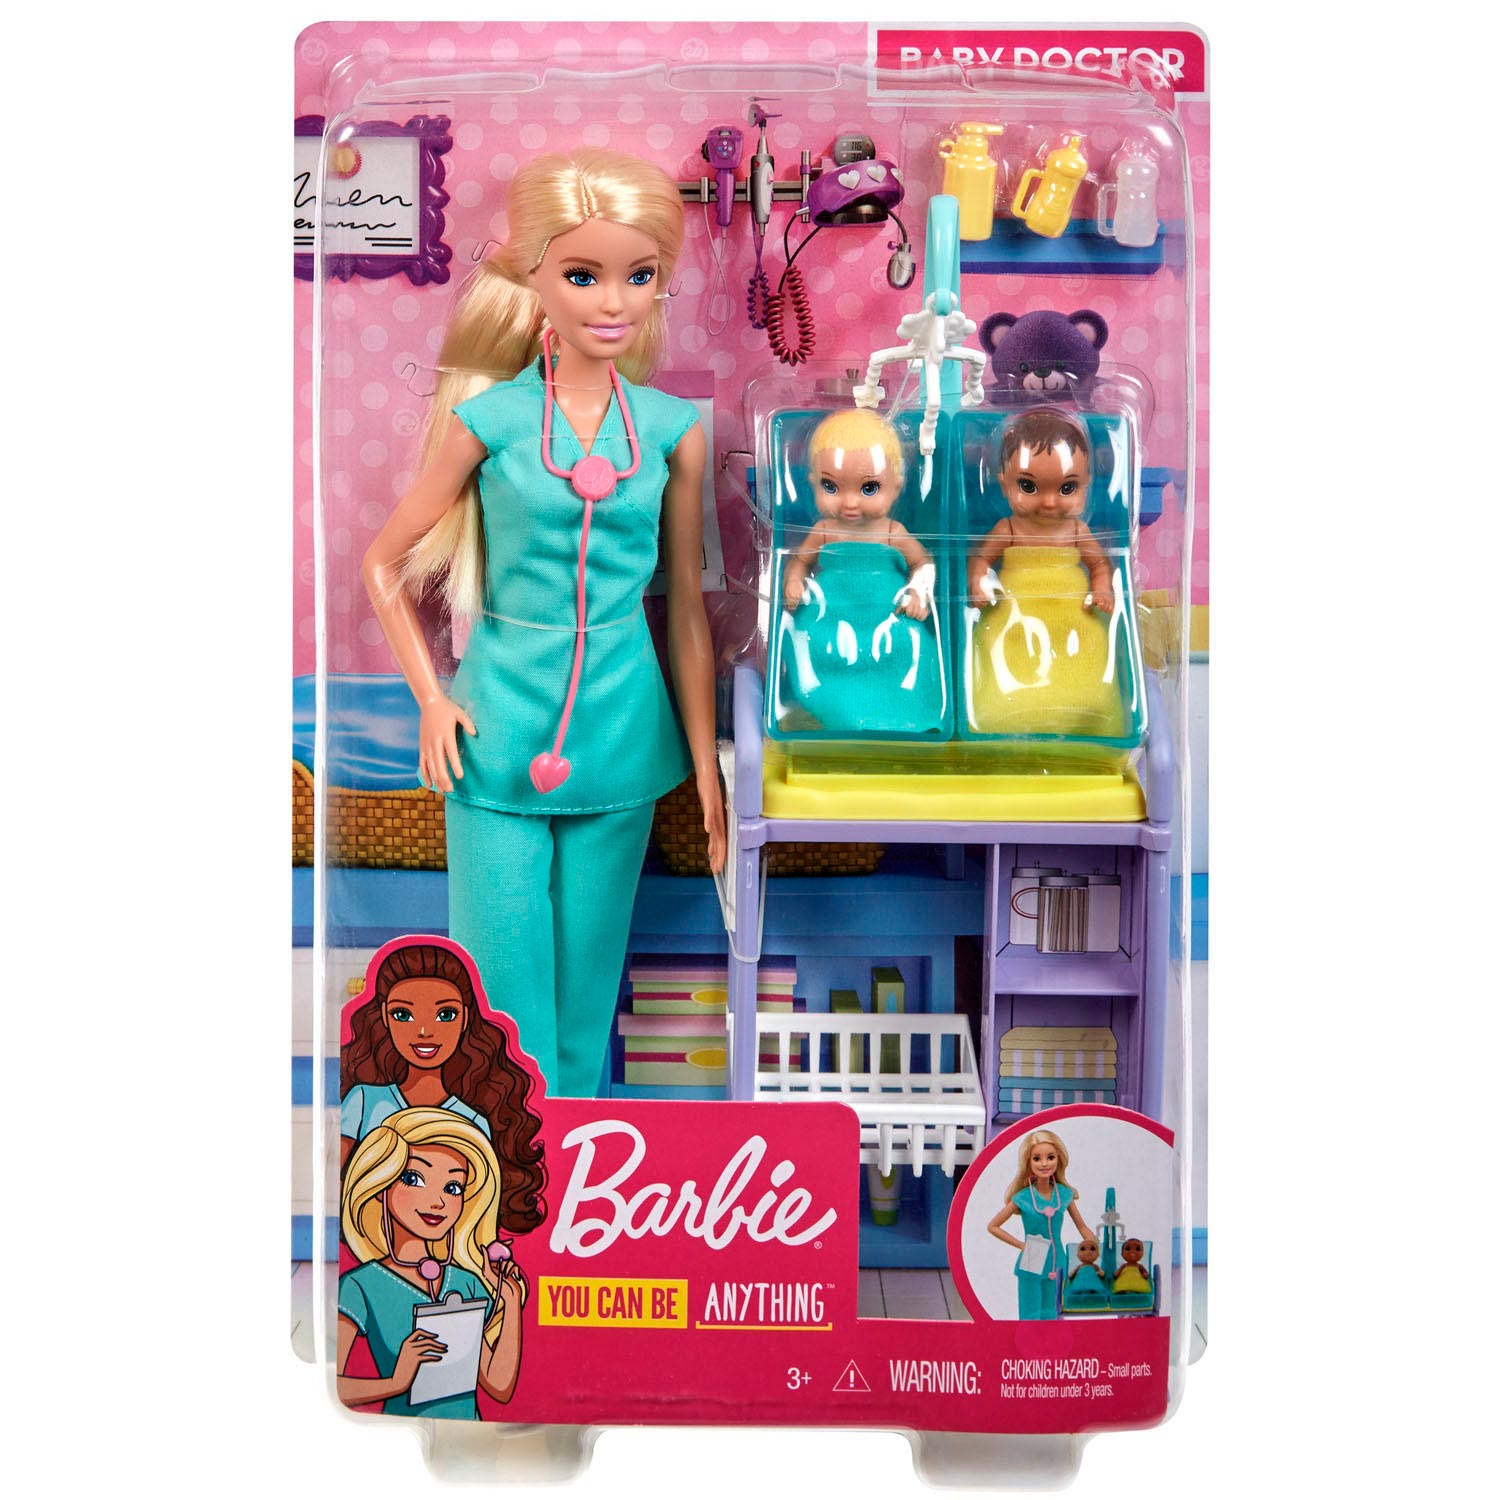 meesteres Midden hebzuchtig Barbie Kinderarts Poppen en Speelset online kopen? | Lobbes Speelgoed